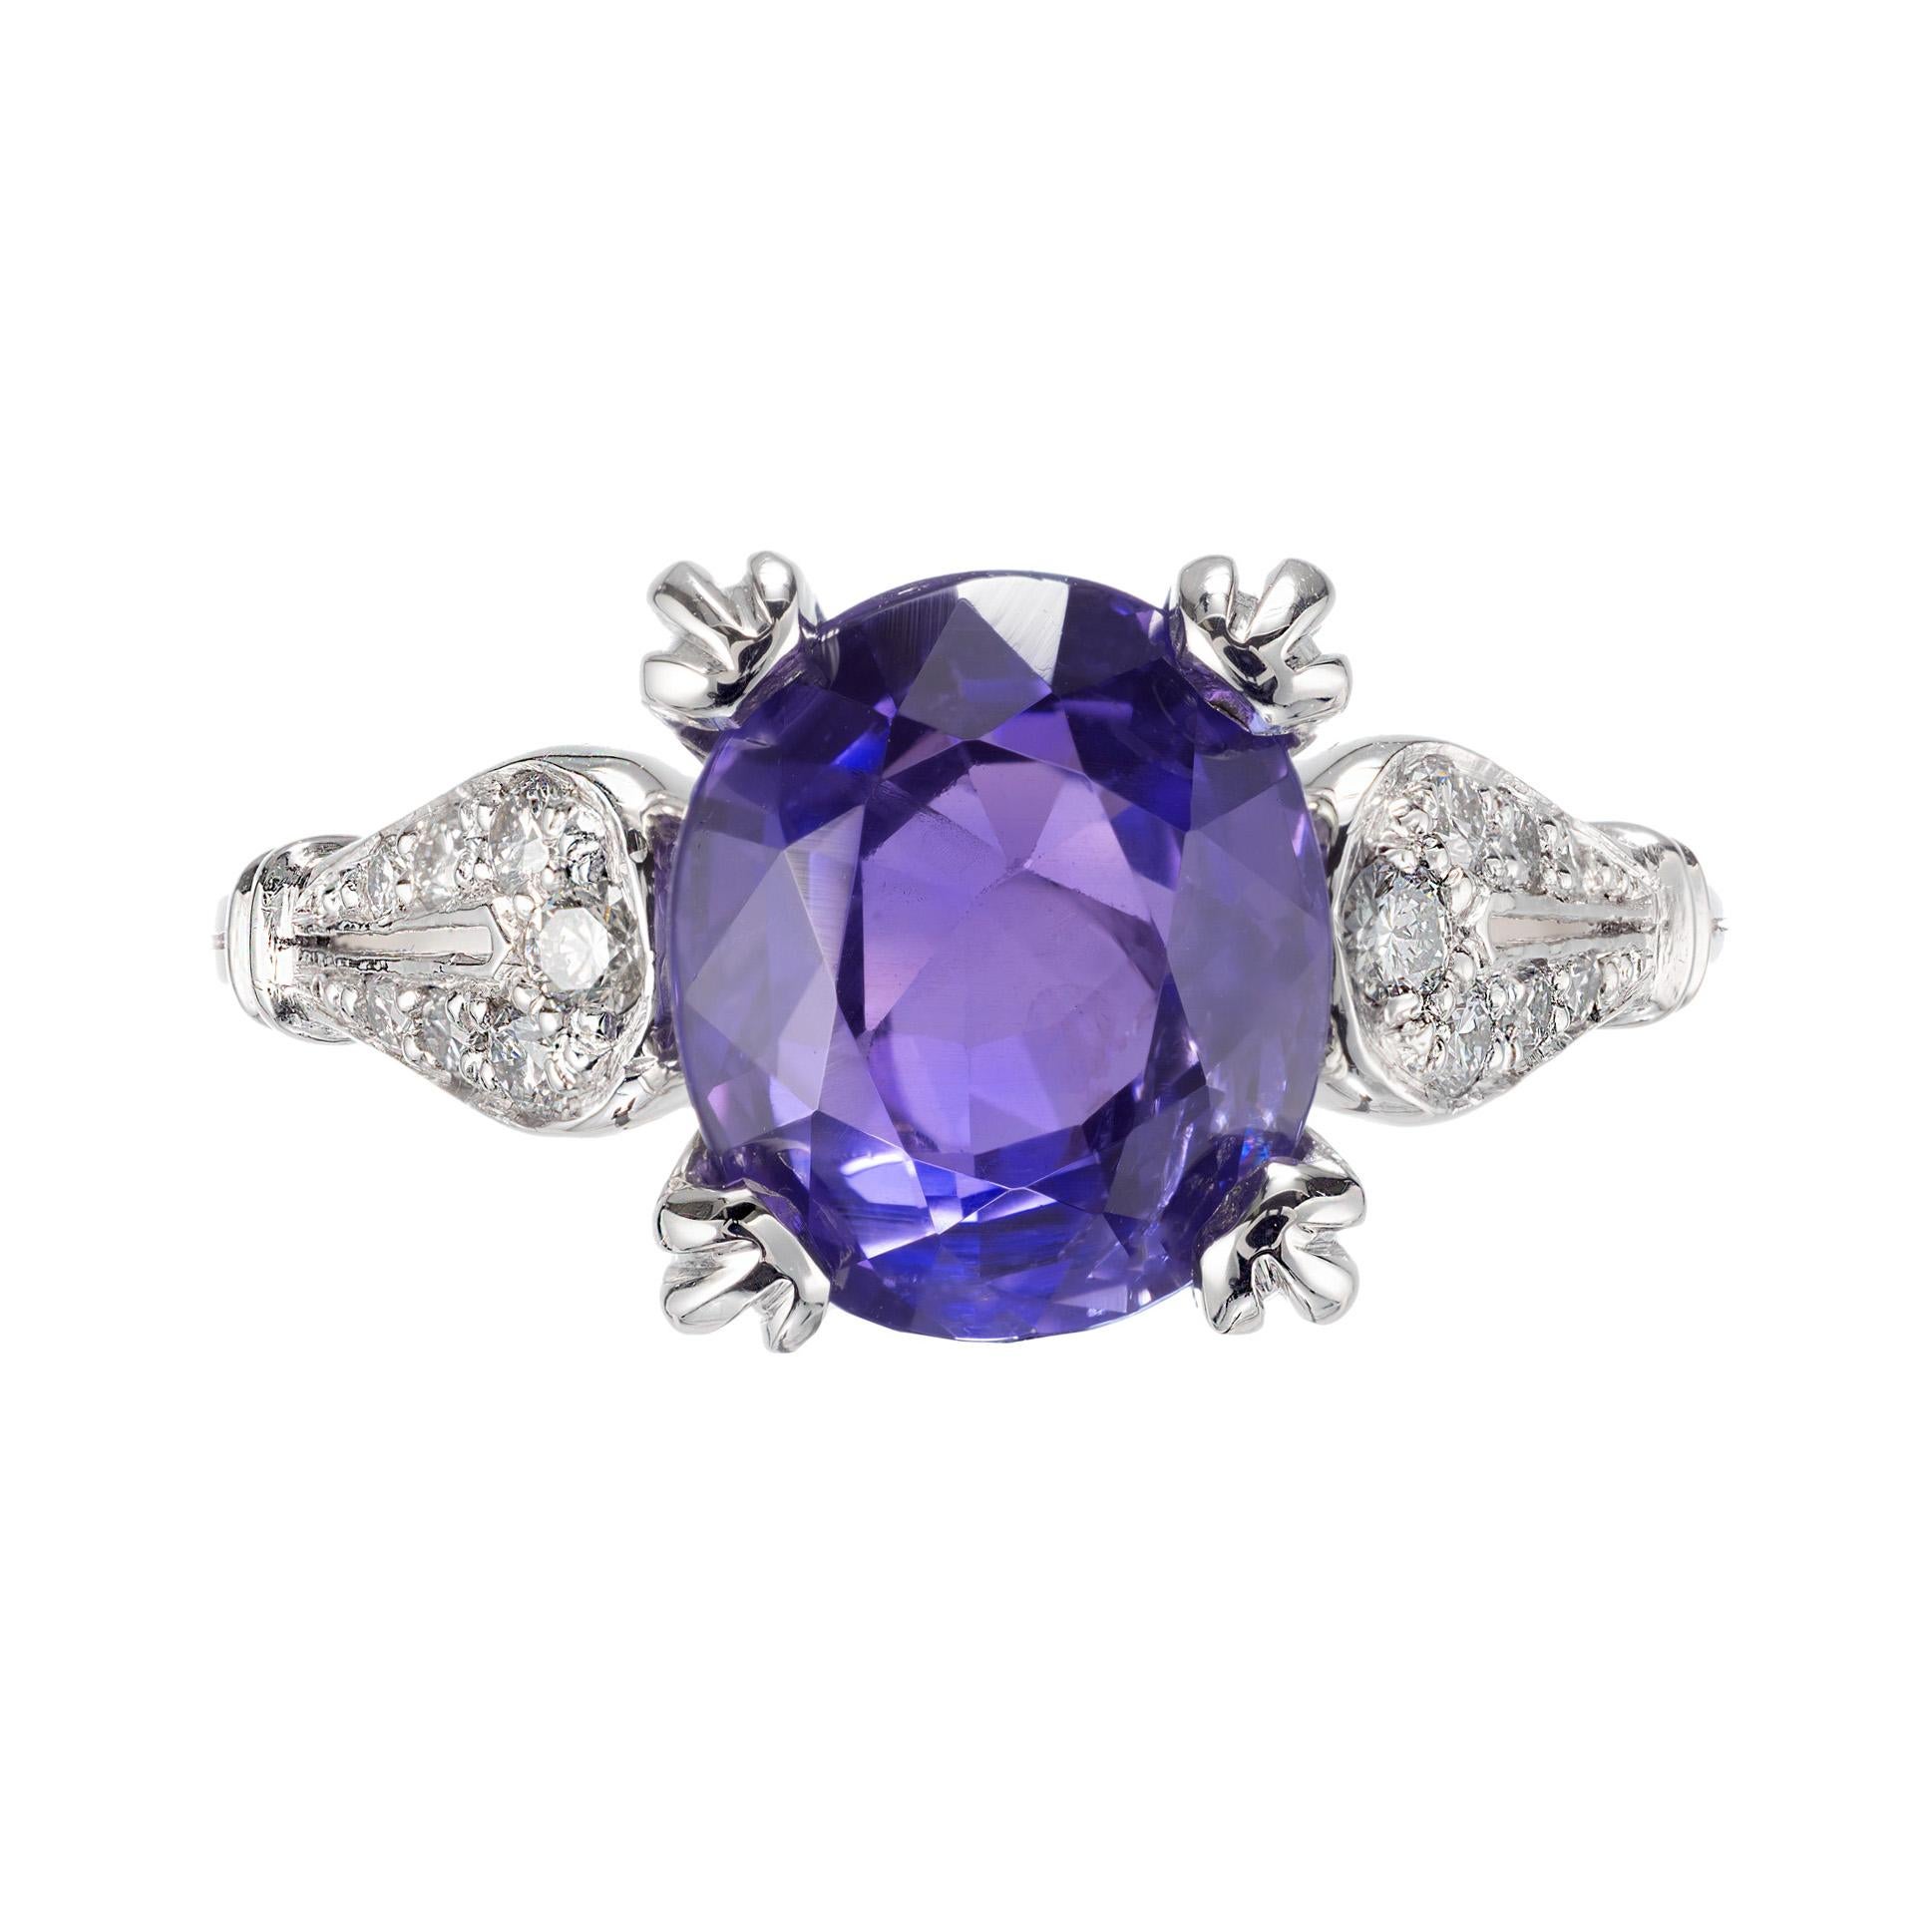 Ovaler Verlobungsring mit violettblauem Saphir und Diamant. GIA-zertifizierter, nicht erhitzter Saphir in einer Platinfassung mit 14 runden Diamanten im Brillantschliff. Die Farbe ändert sich von violett zu blau, wenn sie unter Tages- oder Neonlicht